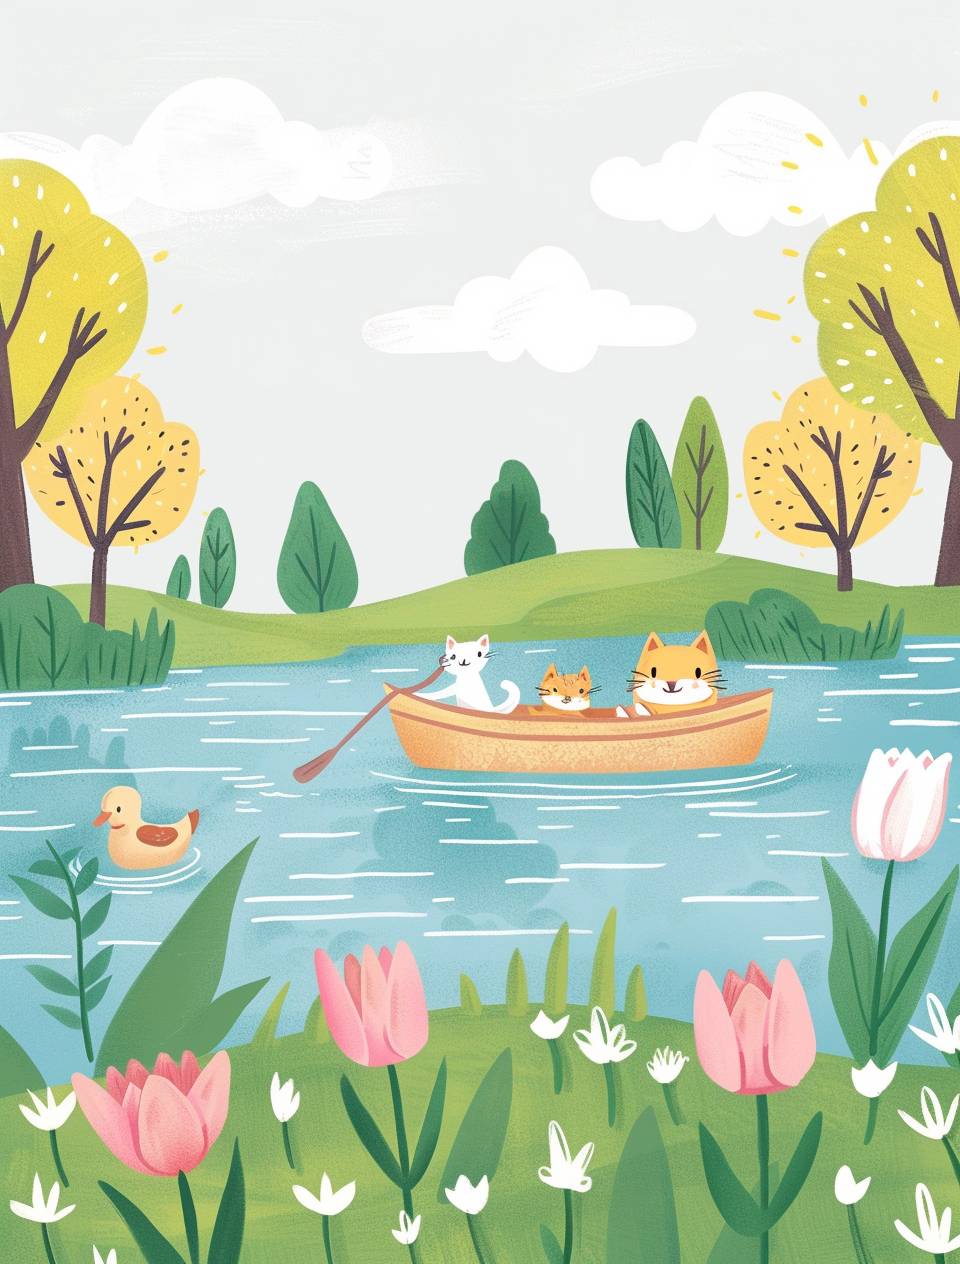 湖の中には、湖に浮かぶいくつかの動物のかわいいカートゥーンイラストが描かれています。両側には緑の芝生と木々があり、木々の上には白い雲がかかっています。小さなボートが水面を漂っており、中には漕いでいる2匹の猫が乗っています。隣には1羽のアヒルが泳いでいます。地面にはピンクのチューリップが咲いています。スタイルはジブリスタジオのようで、子供の絵本のイラストのようで、パステルカラーで、簡単な線画、クリーンな線、平面的な色彩、シェーディングなし。